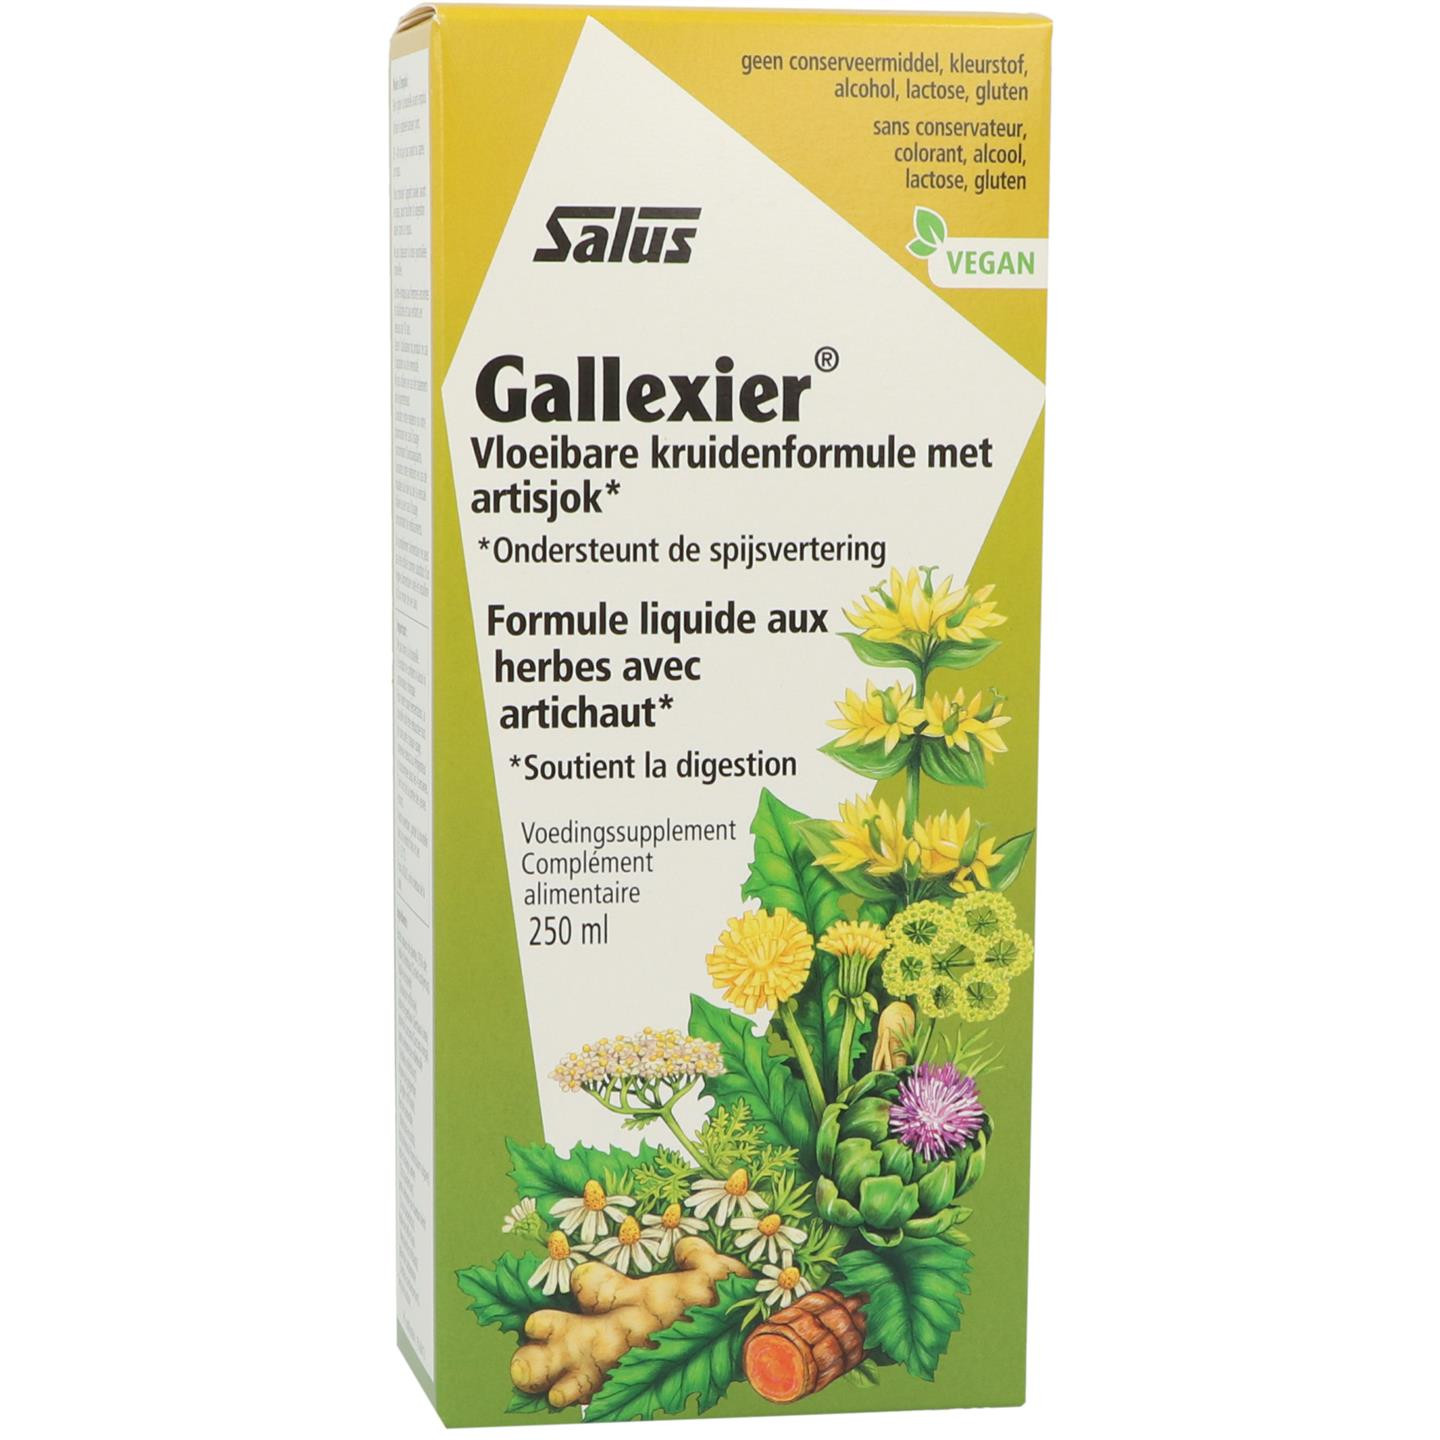 Gallexier